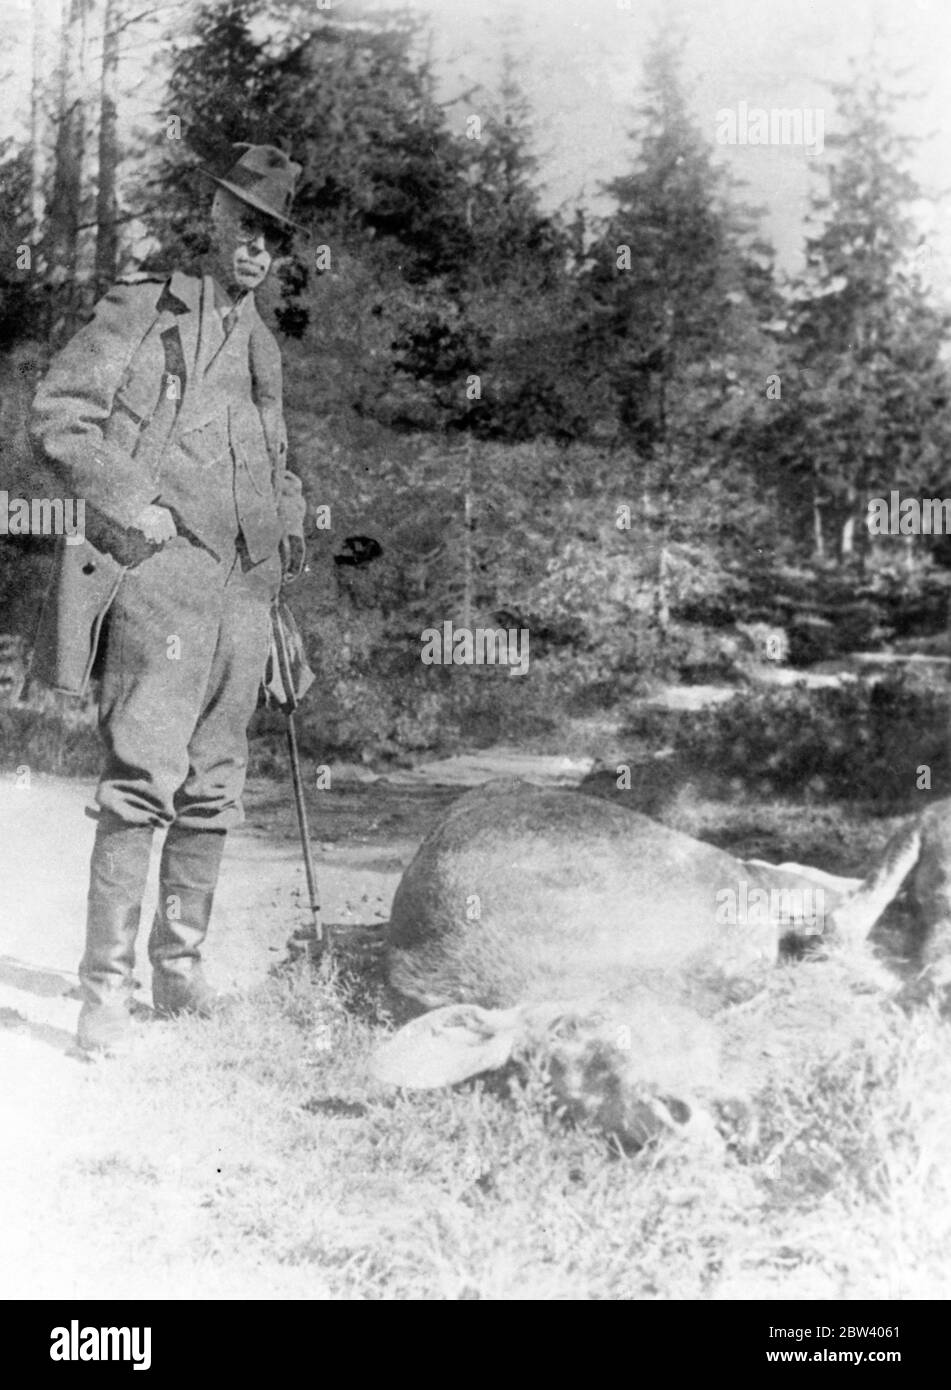 Le roi Gustav va chasser l'élan avec son compagnon anglais. Le roi Gustav , connu pour son énergie de sportif , s'est lancé dans une chasse réussie à l'élan en Suède . Photos , le roi Gustav et son ' sac ' . 19 septembre 1936 Banque D'Images